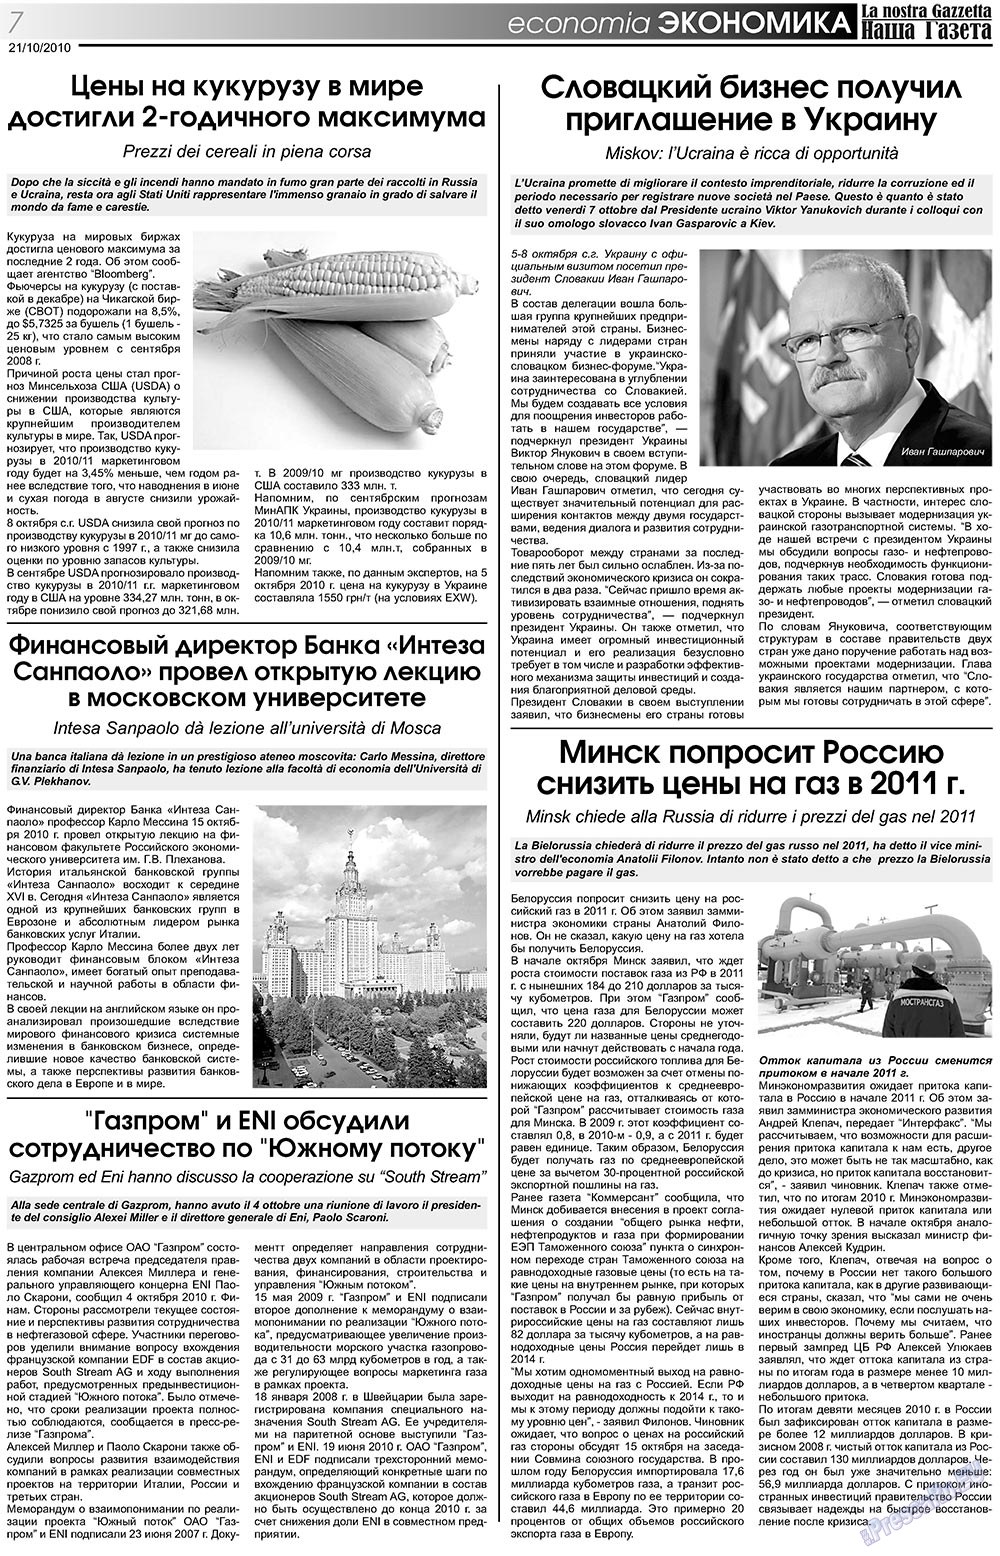 Наша Газета Италия, газета. 2010 №119 стр.7